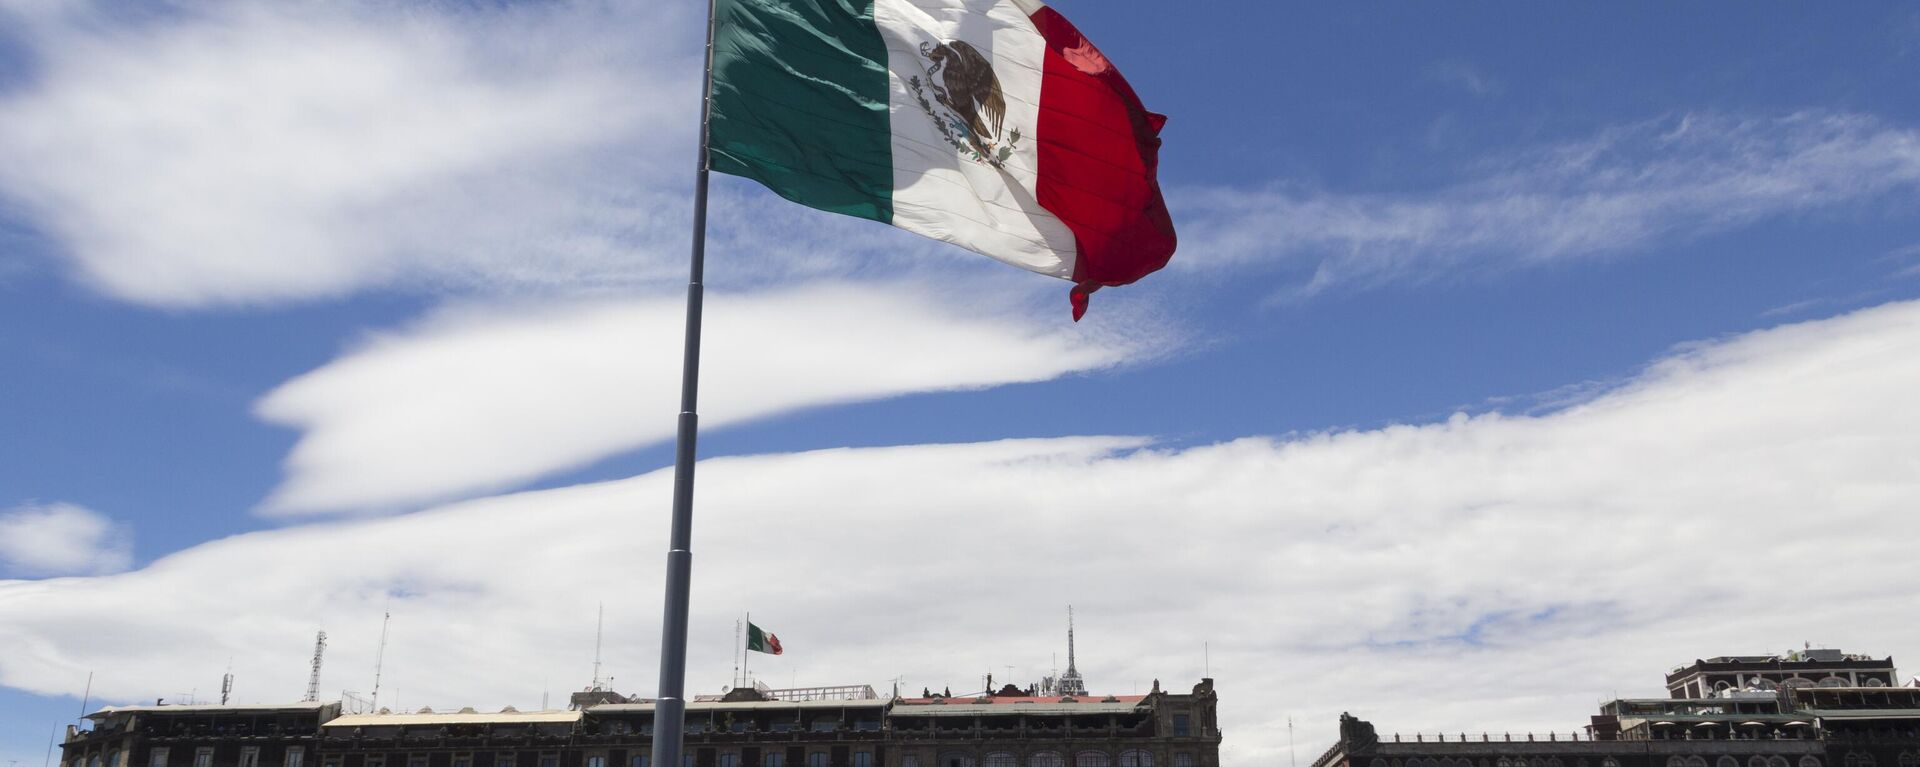 Bandera de los Estados Unidos Mexicanos - Sputnik Mundo, 1920, 22.10.2021